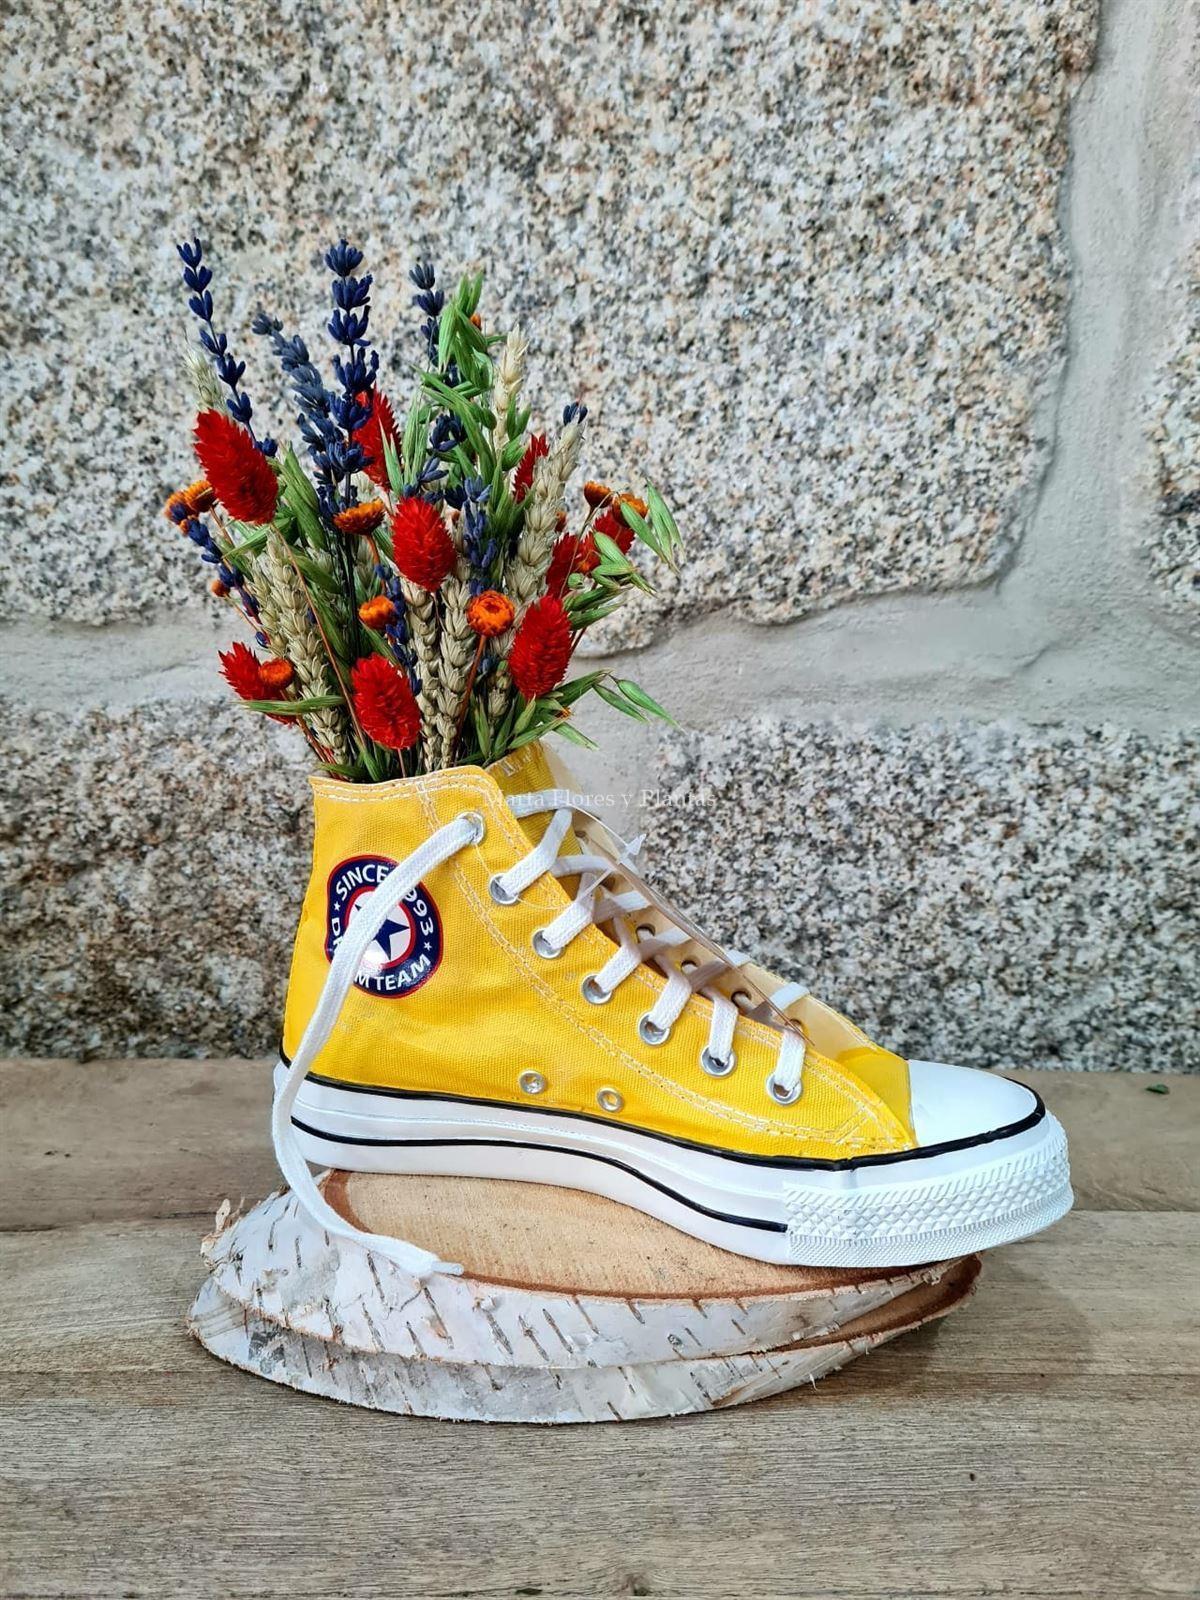 Zapatillas Convers con flor seca - Imagen 1